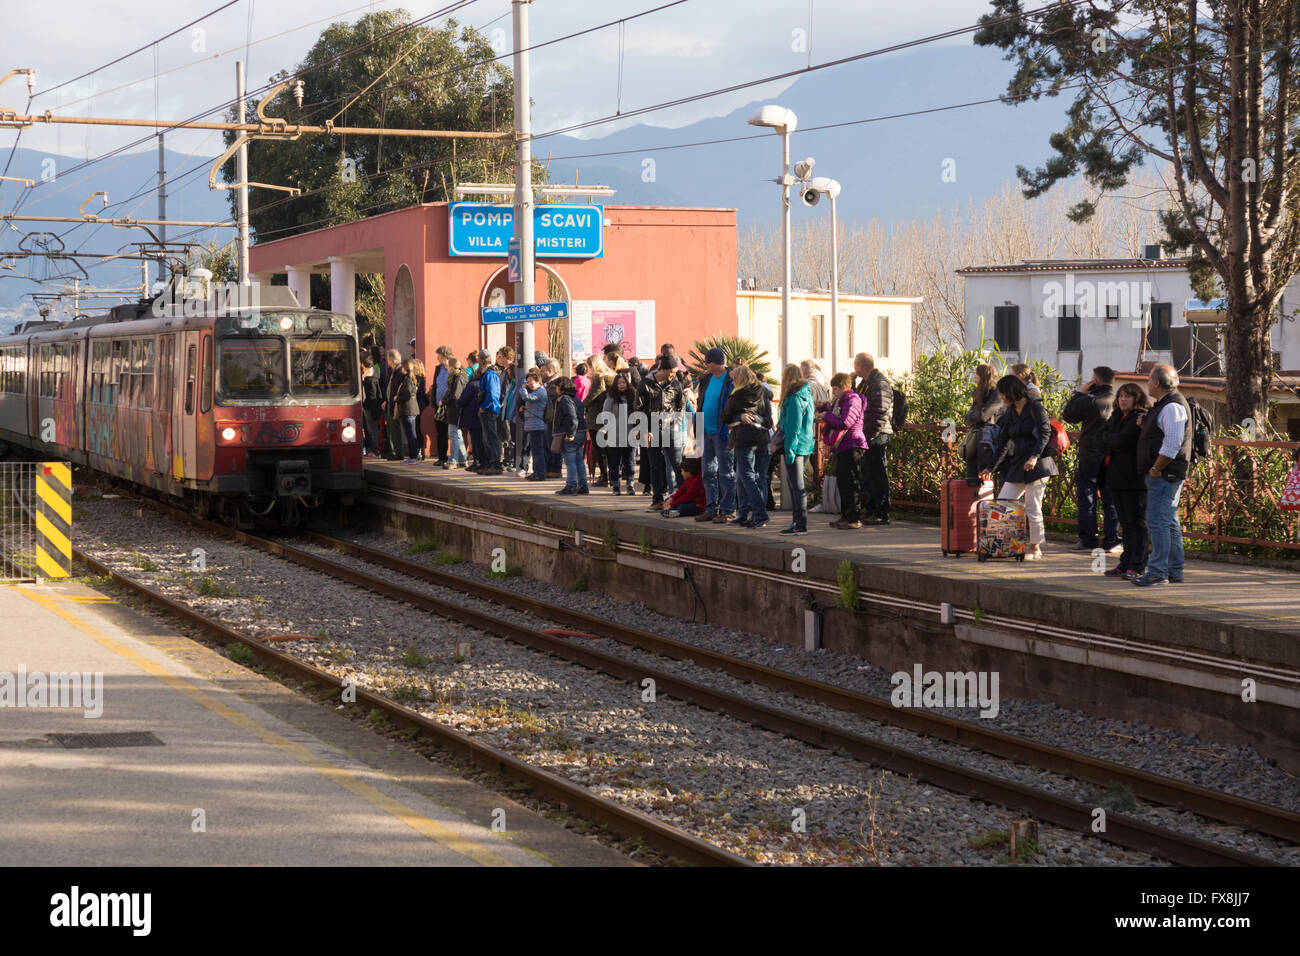 Pasajeros que esperan el tren de Sorrento a Nápoles en la línea Circumvesuviana en la estación de tren de Pompeya - Pompeya Scavi-Villa dei Misteri, Italia Foto de stock